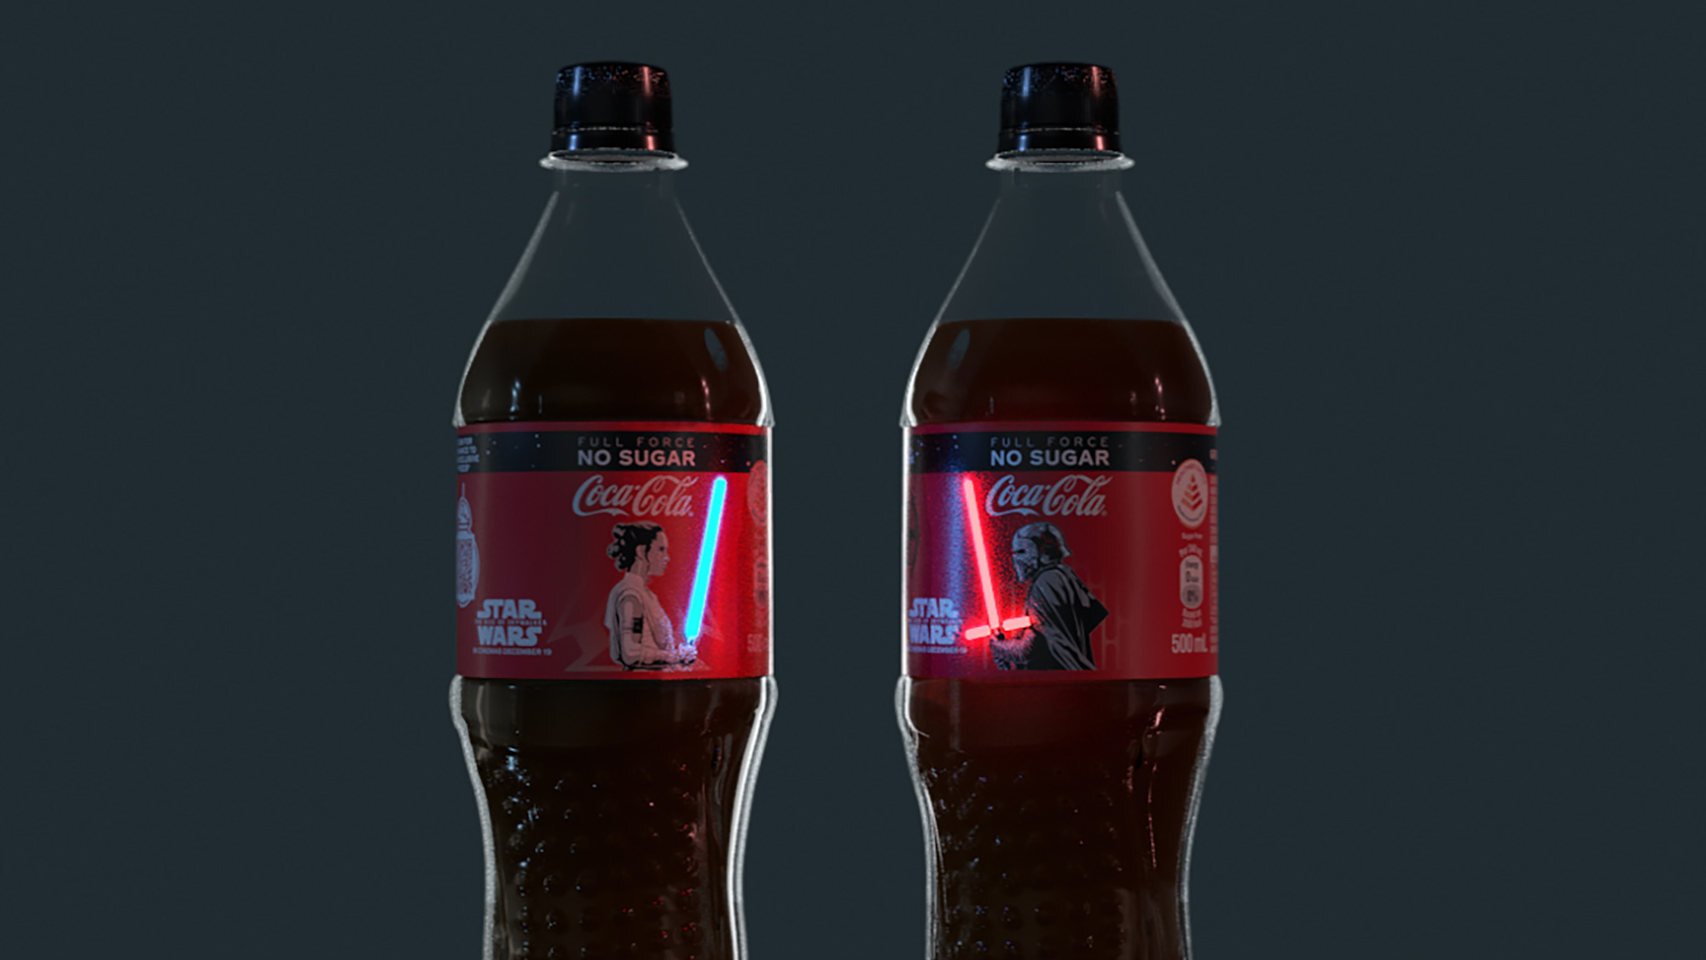 Botellas de Coca-Cola.